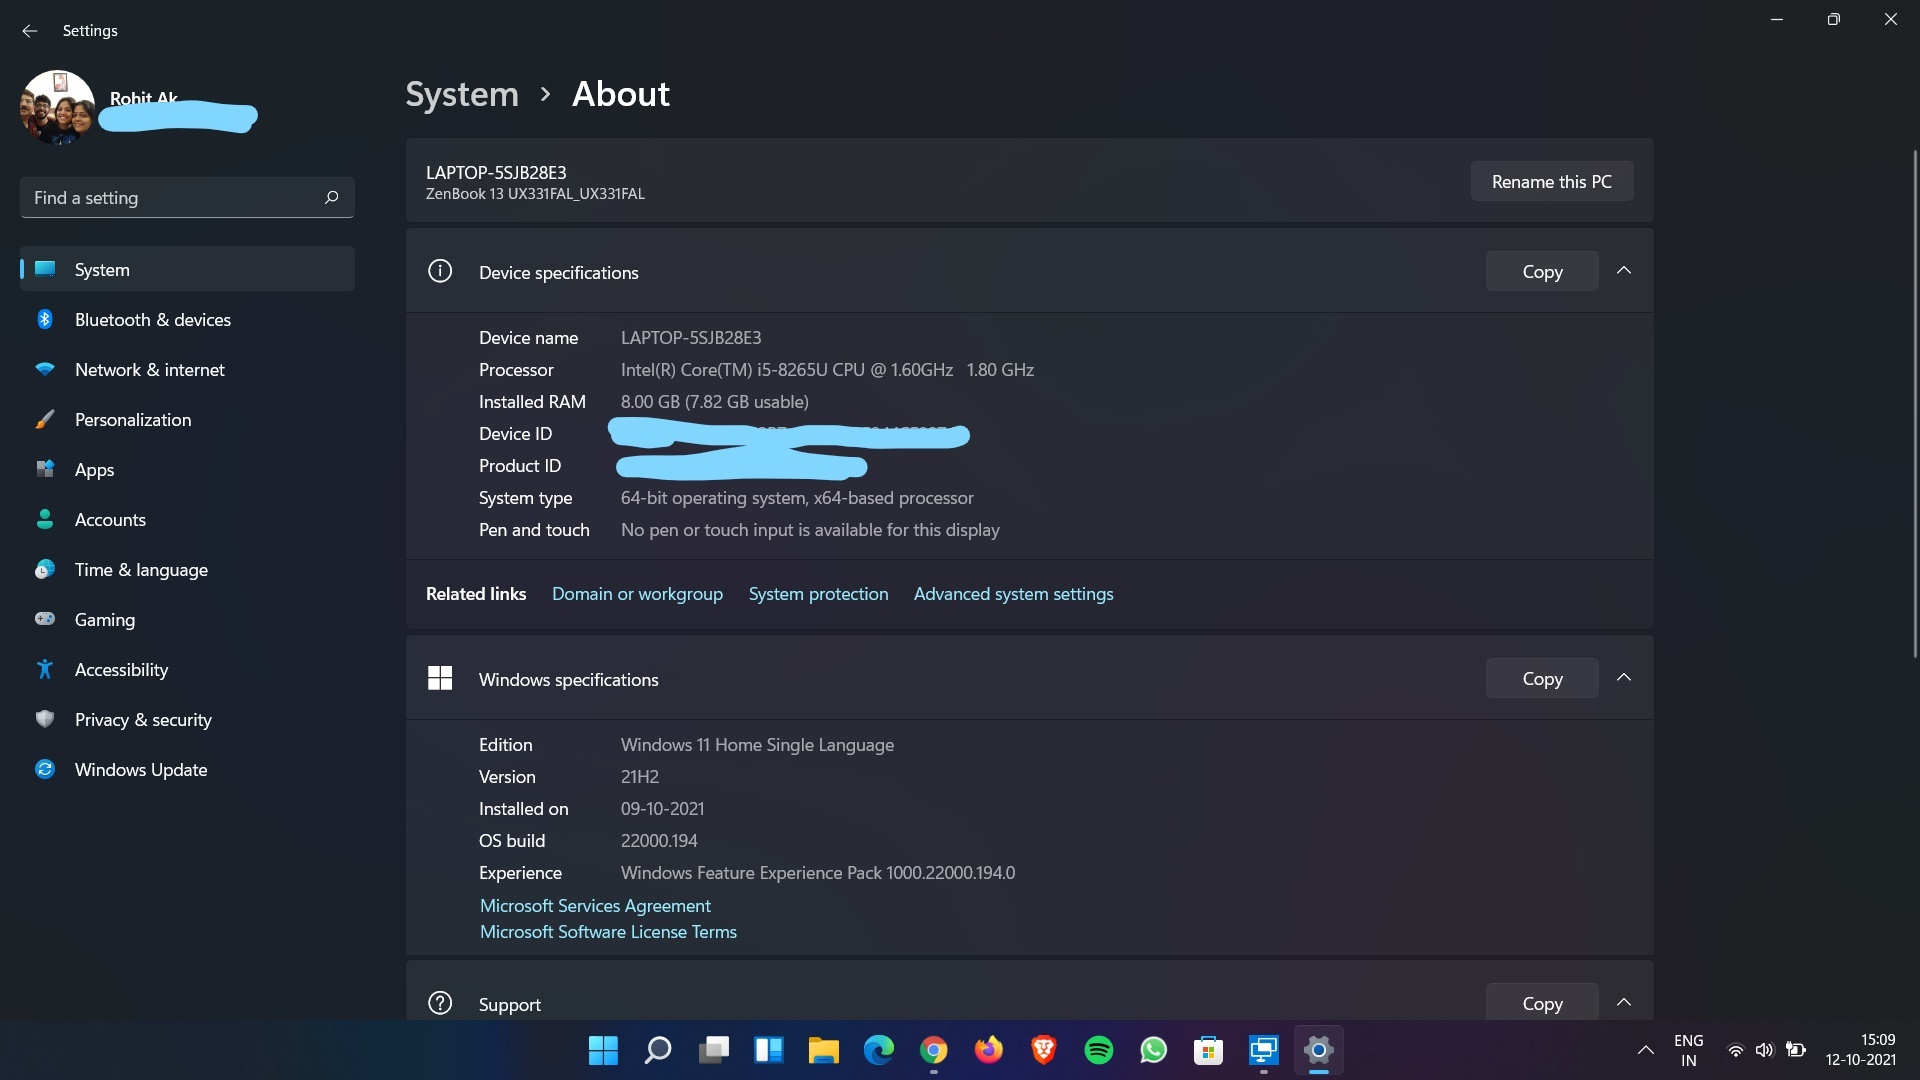 Probleme beim Tippen und Verwenden von Windows 11